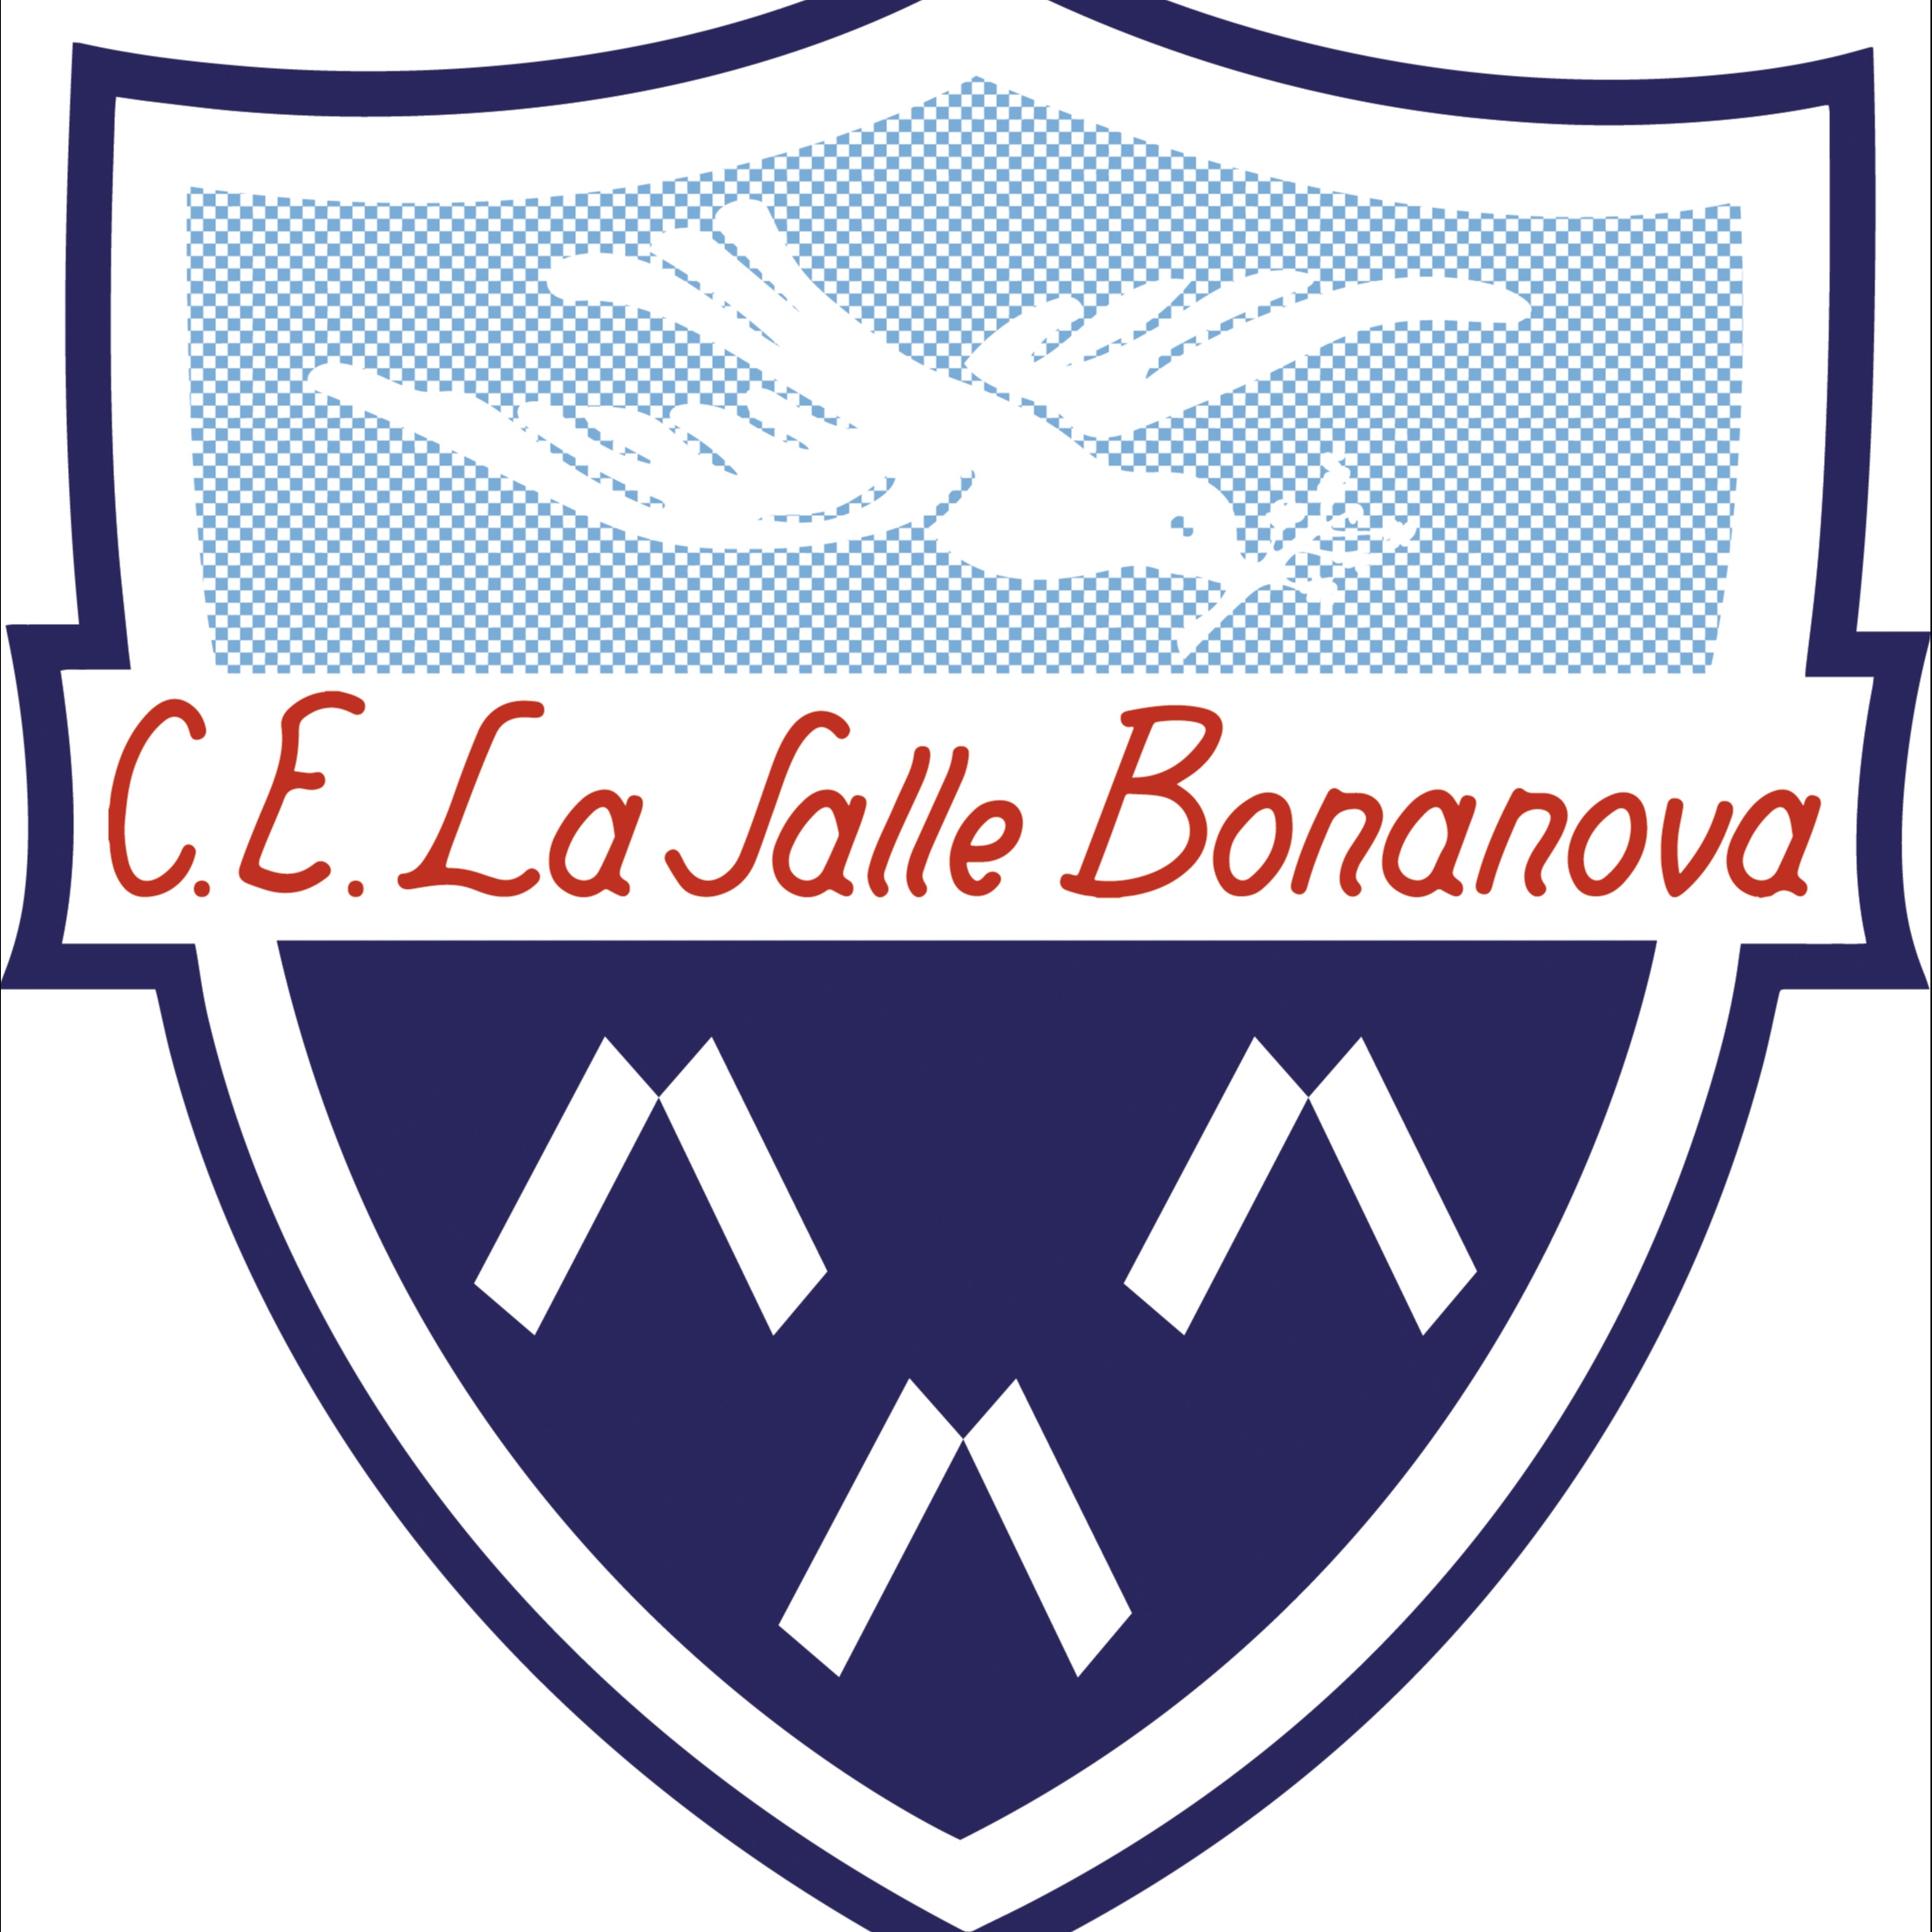 C.E. LA SALLE BONANOVA